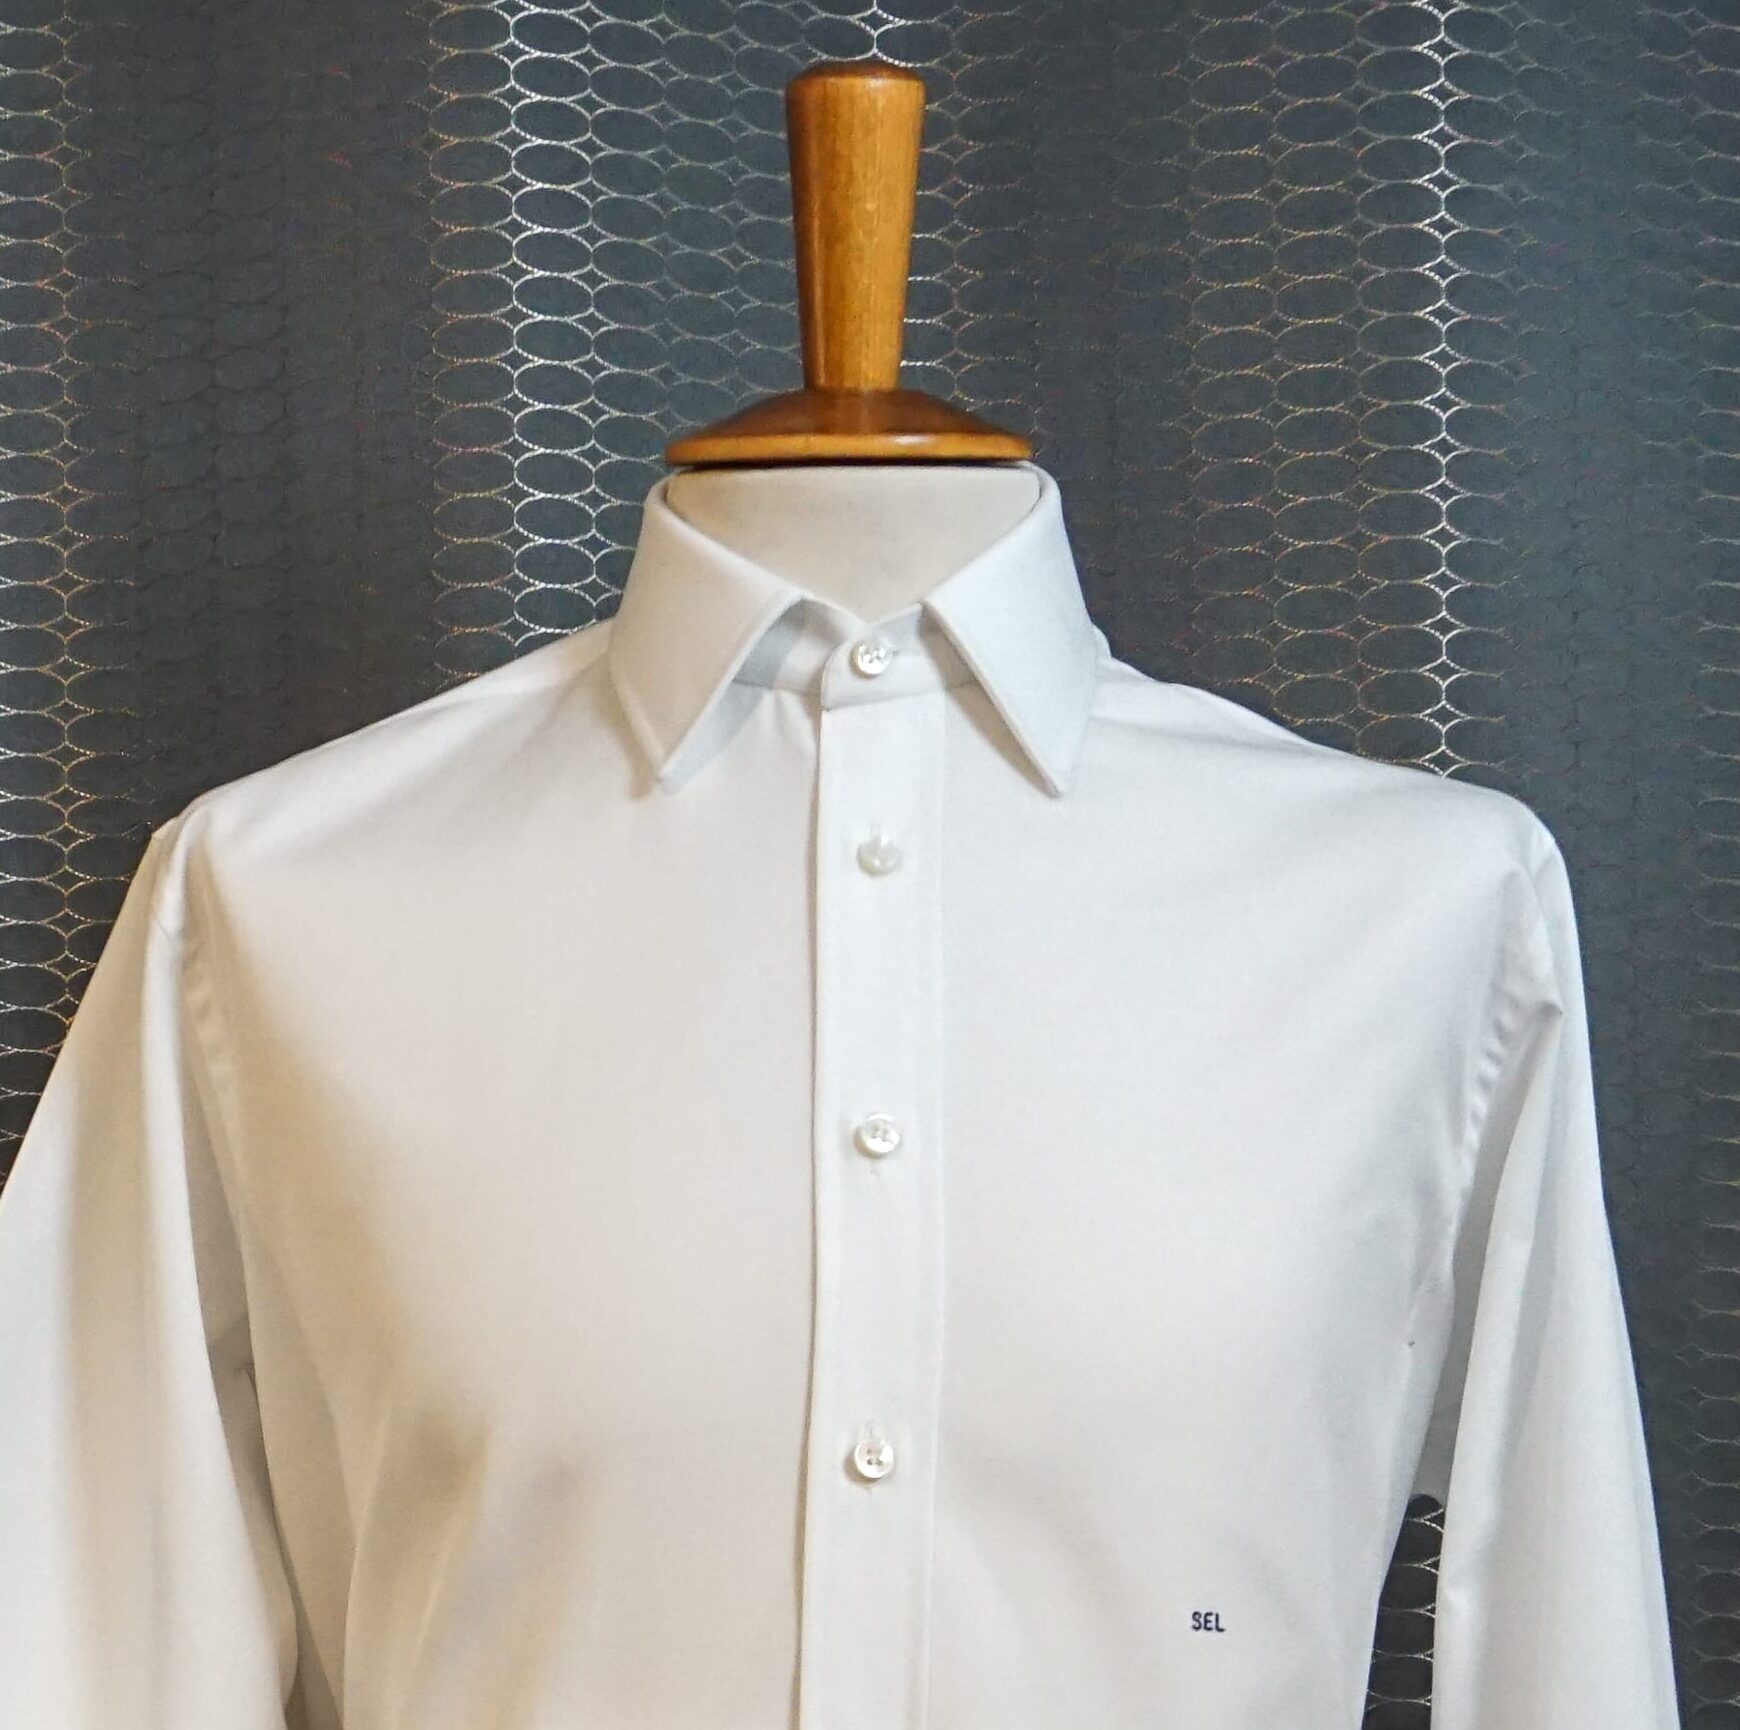 White dress shirt - chemise blanche - made to measure shirt - Revenga Chemisiers Genevois